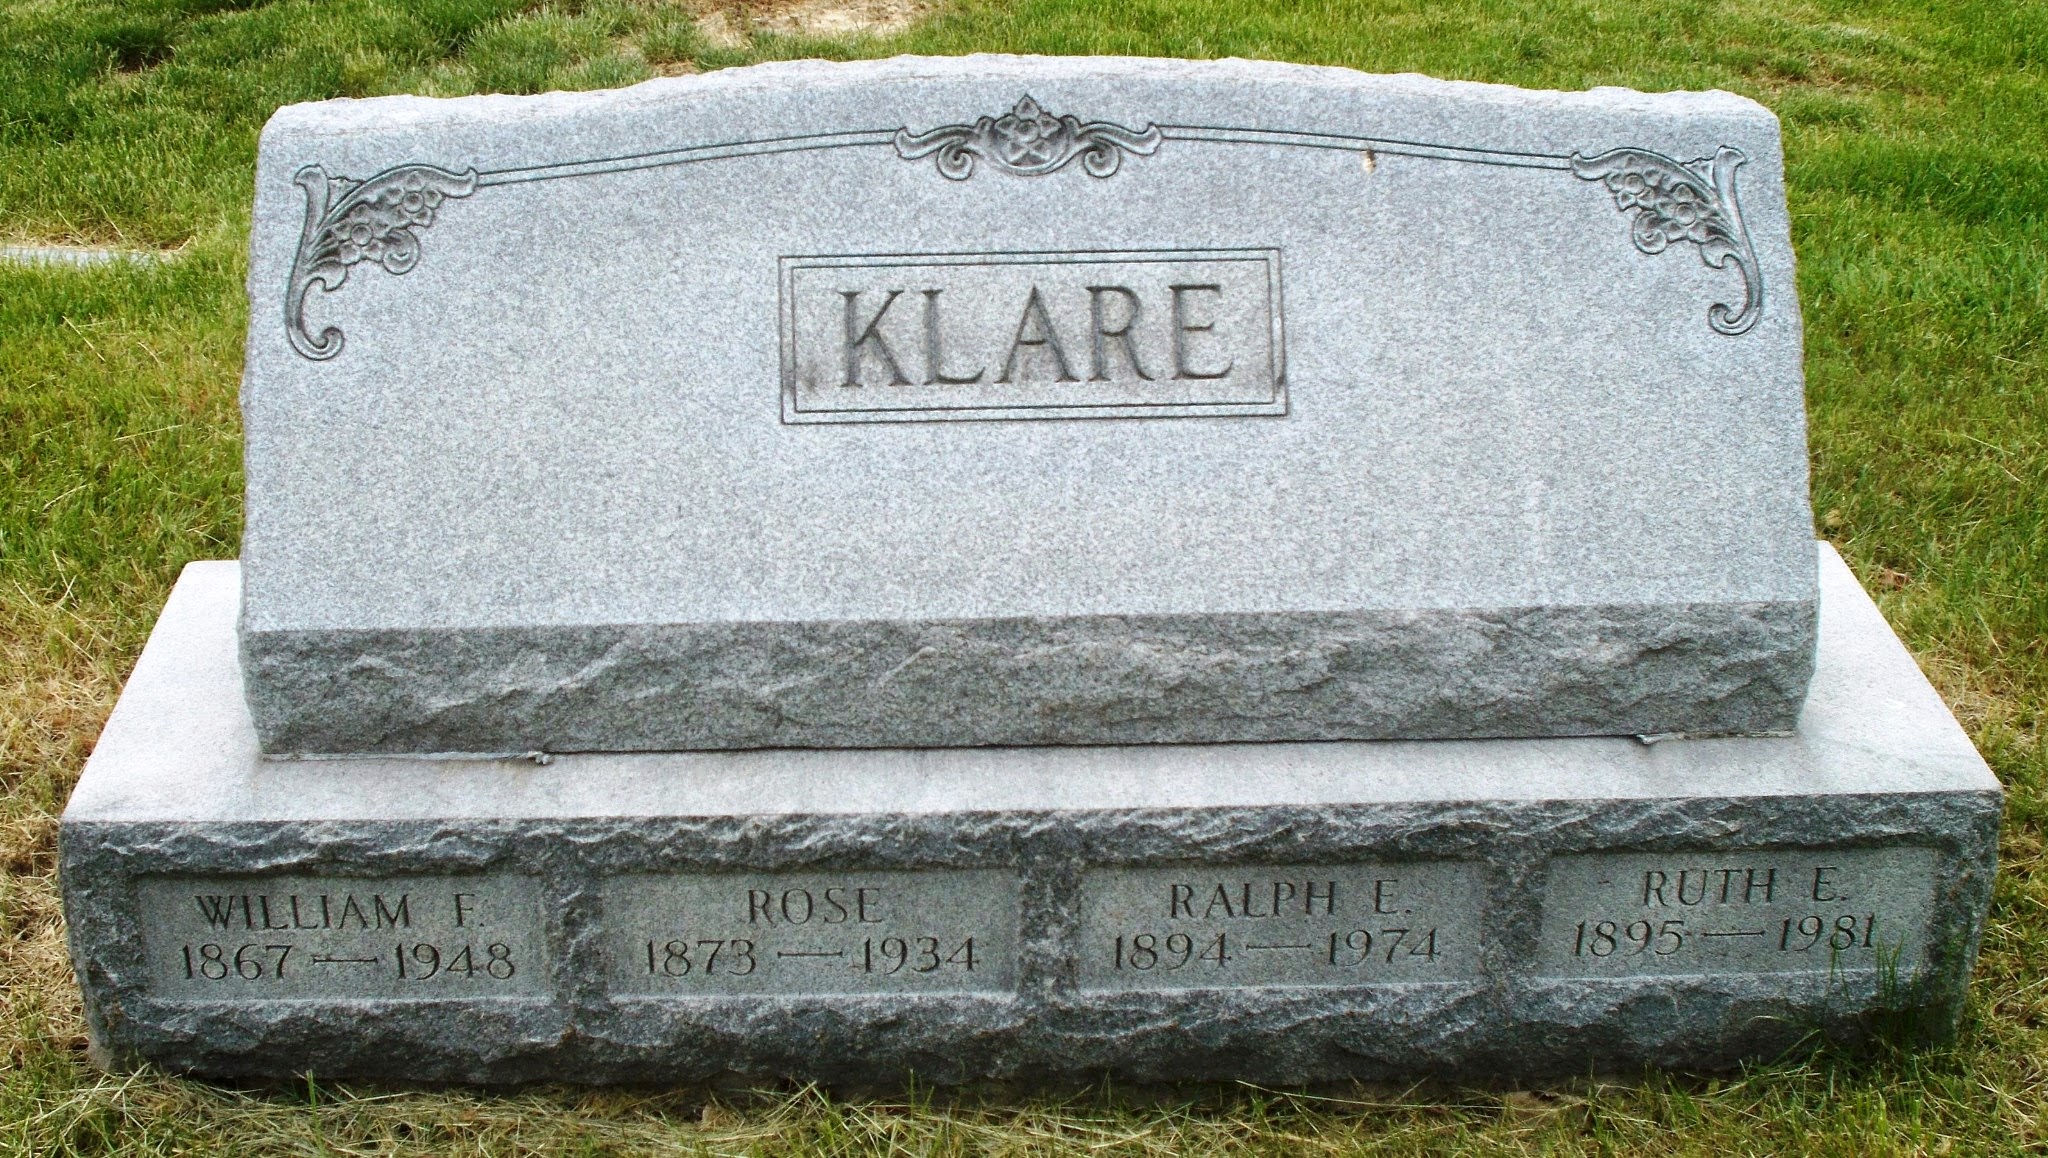 William F Klare